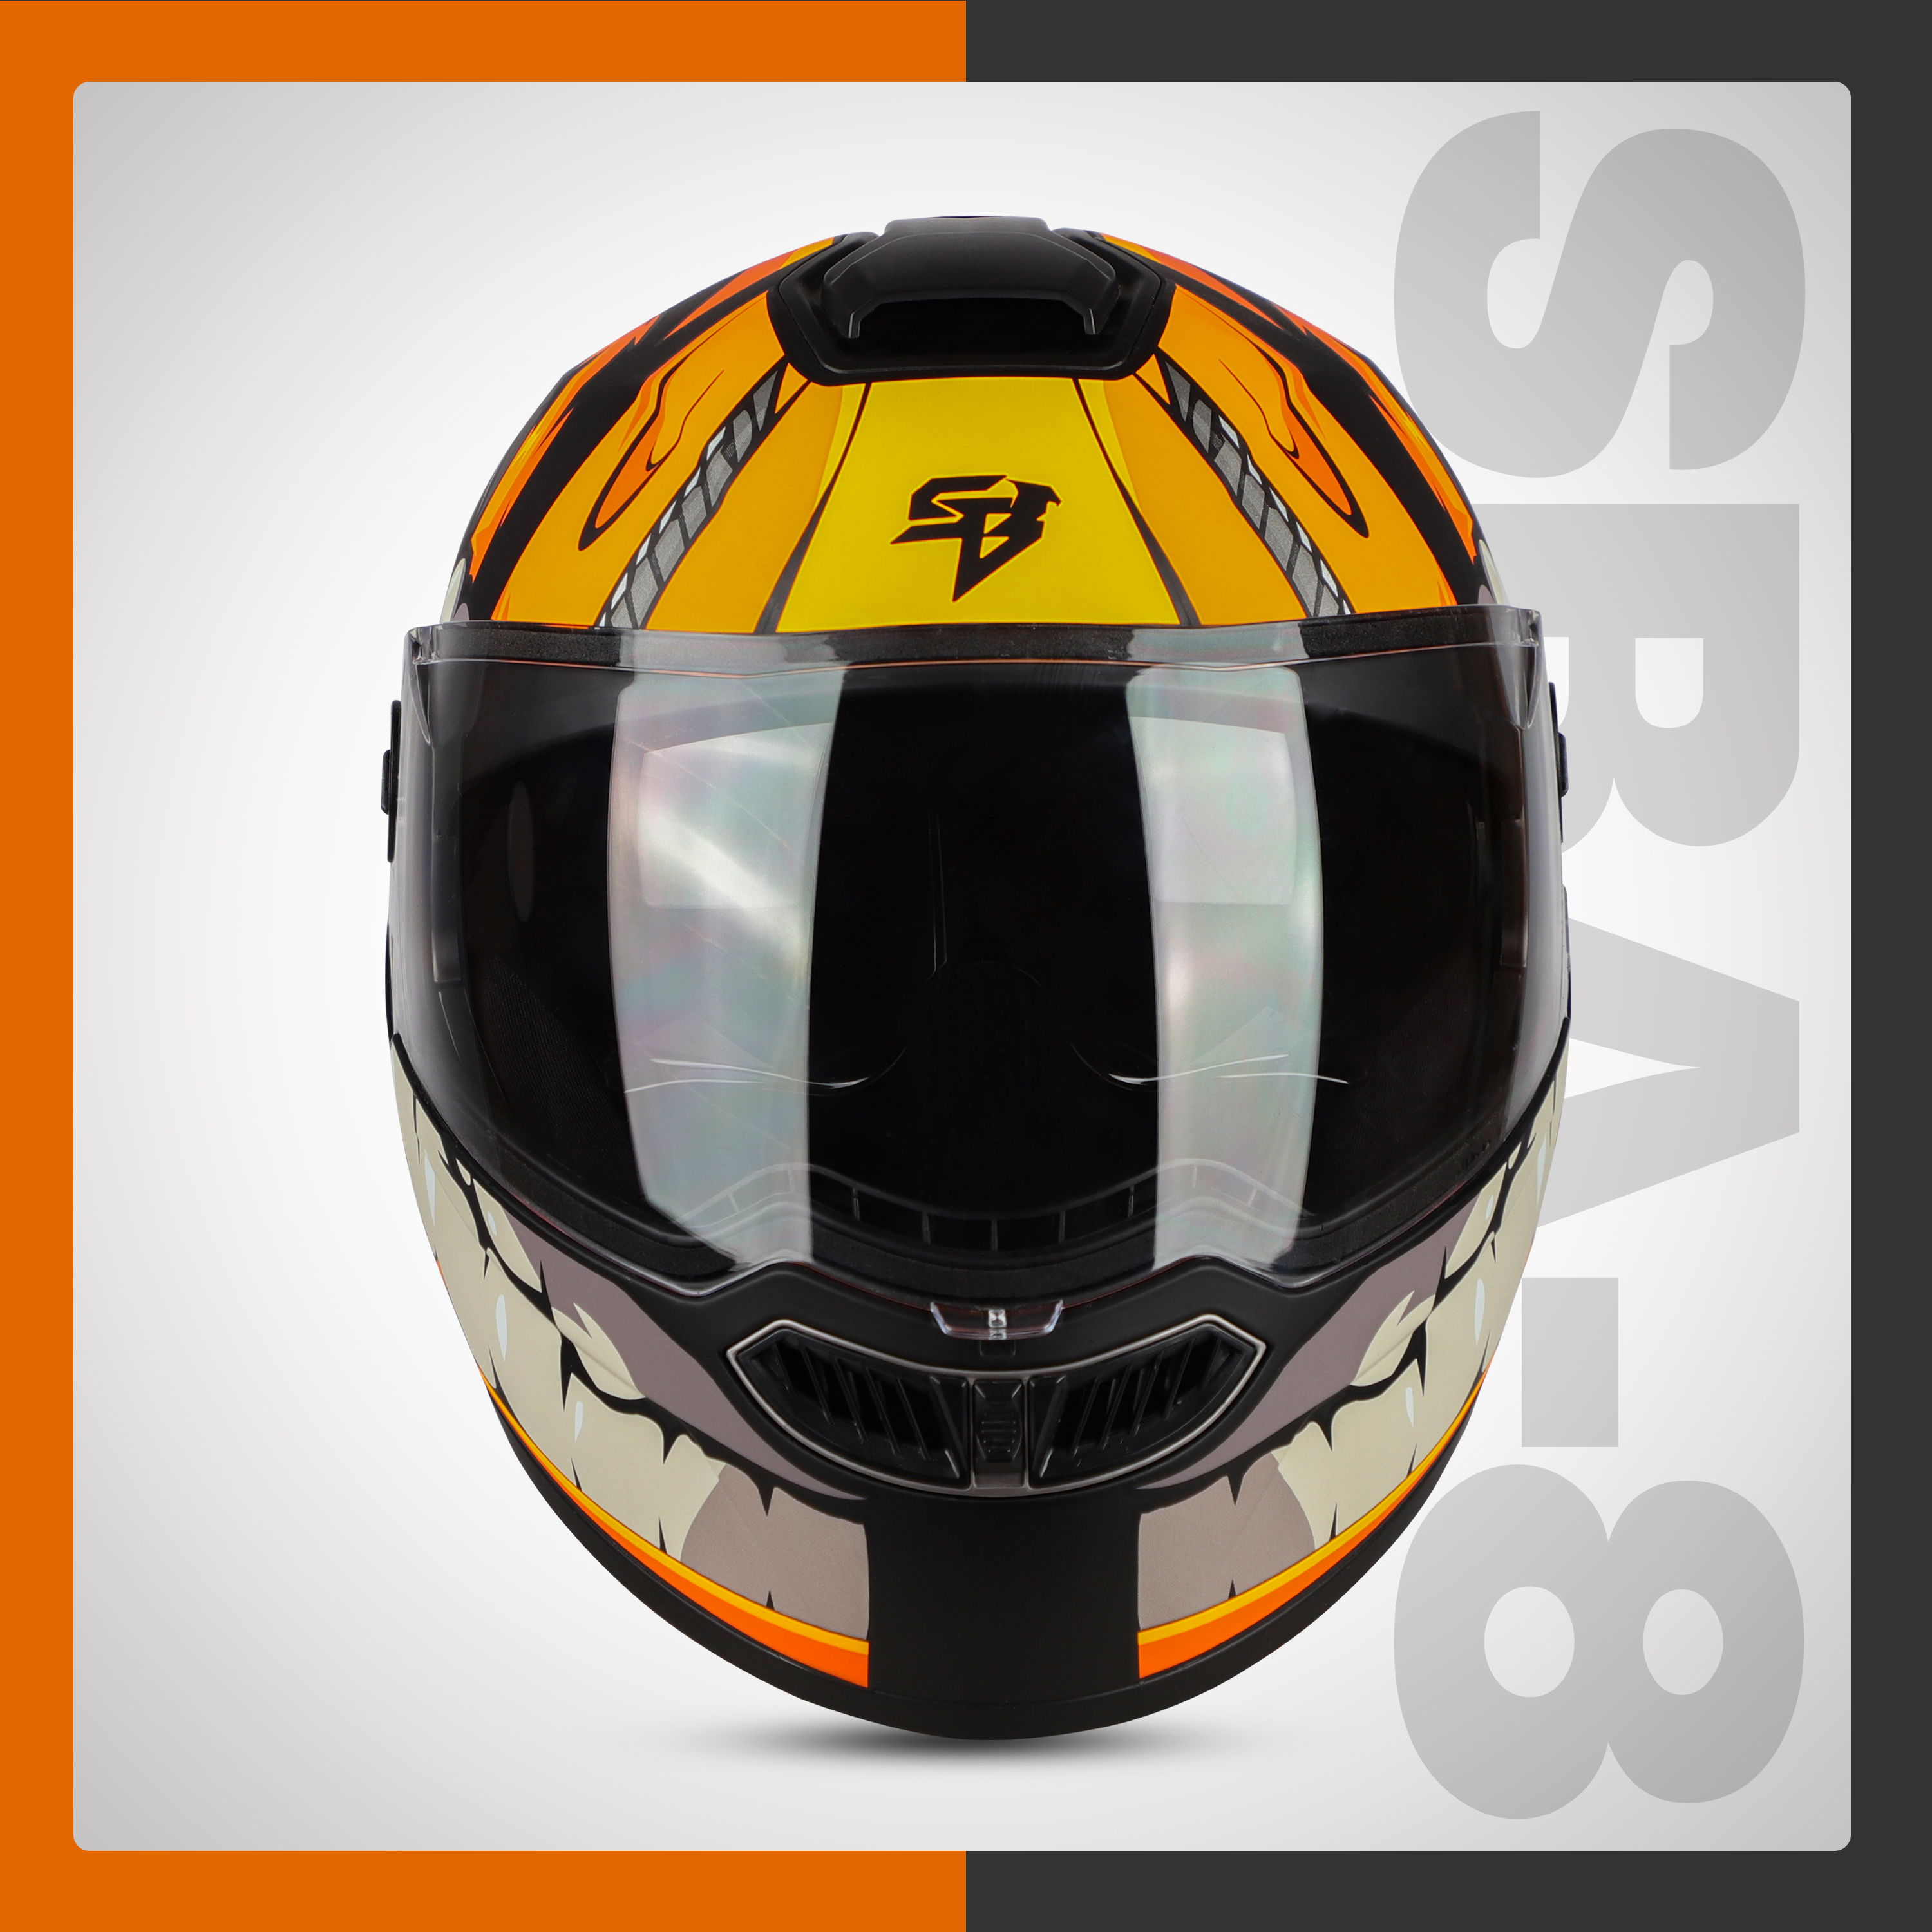 Steelbird SBA-8 Crazy Wheel ISI Certified Flip-Up Helmet For Men And Women With Inner Smoke Sun Shield (Matt Black Orange)